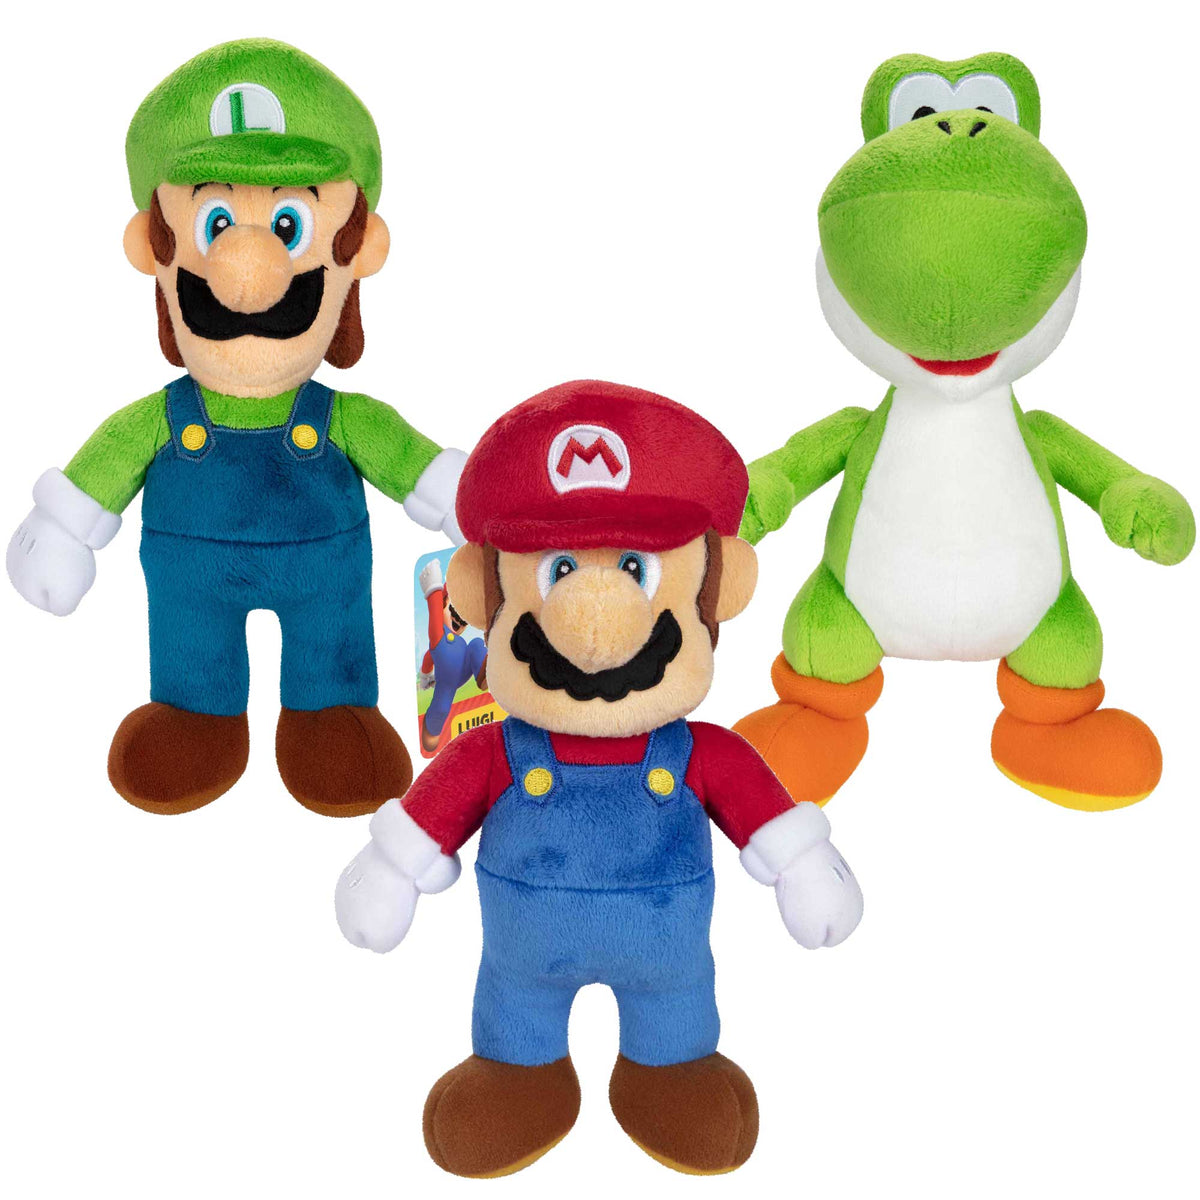 Super Mario Plush Toy Assortment